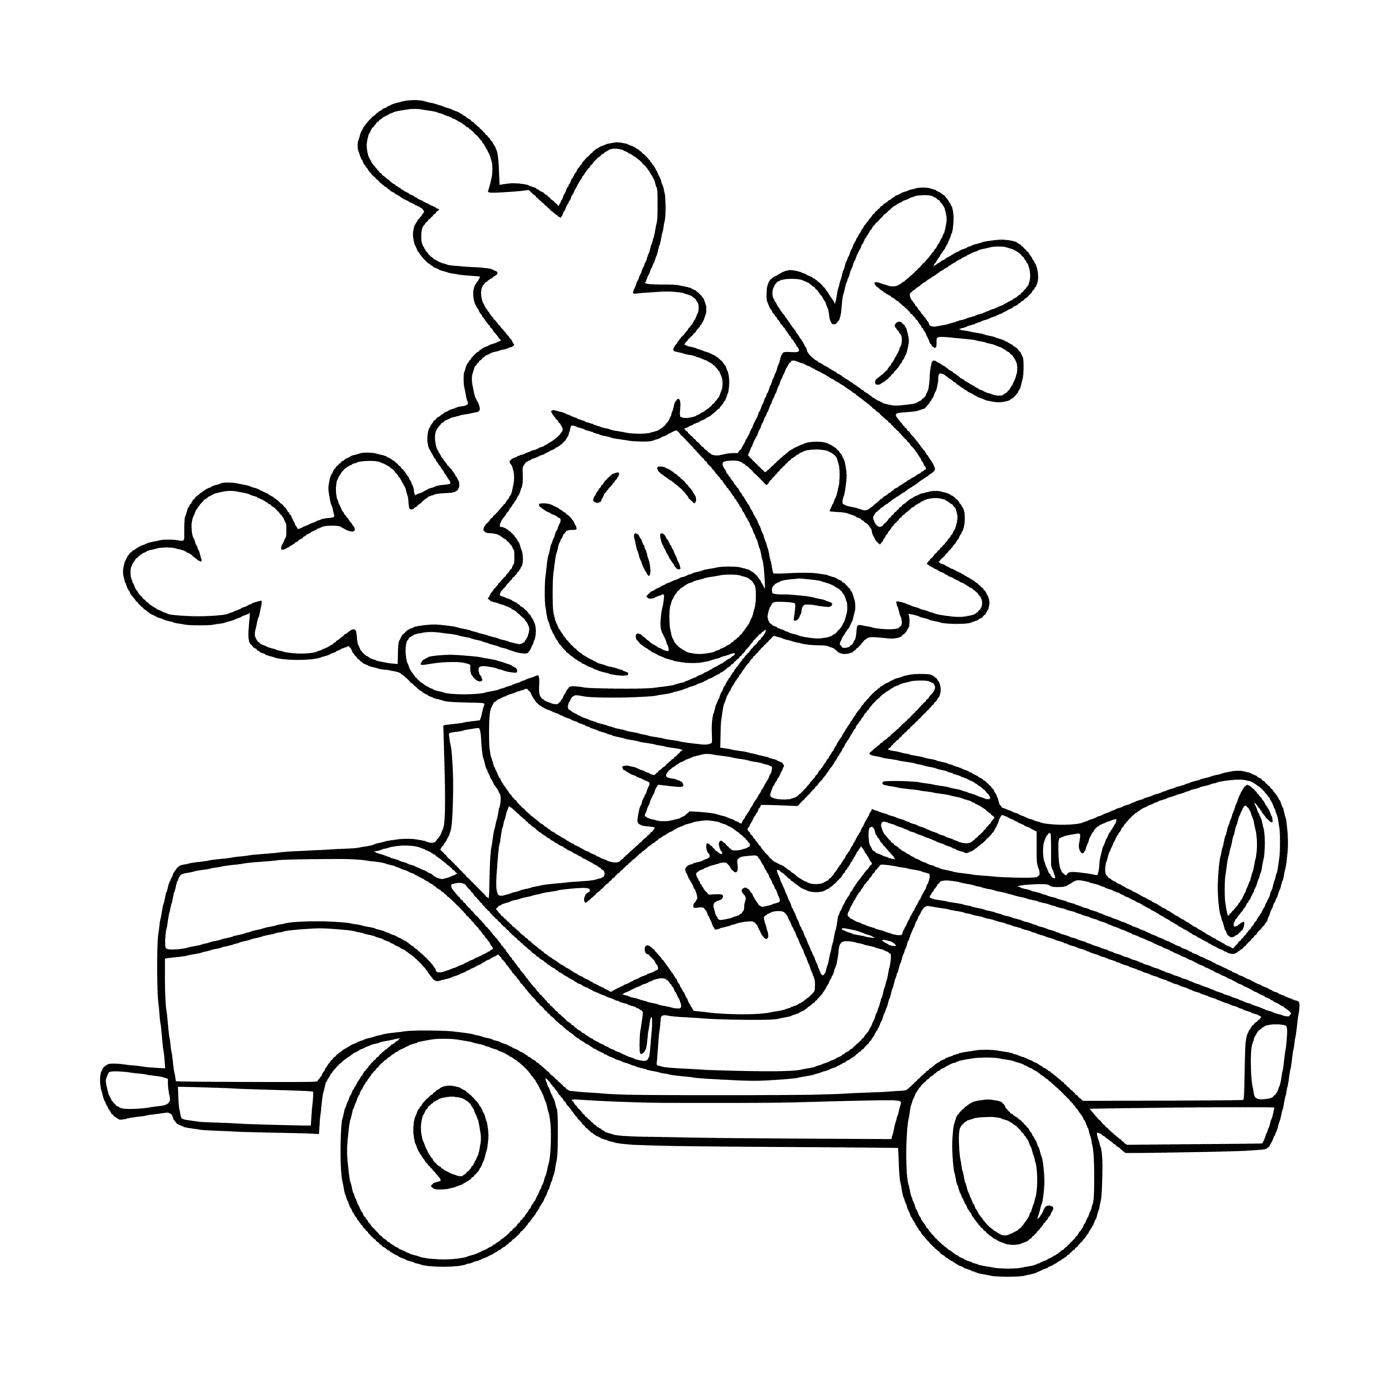  Nice clown driving a car 